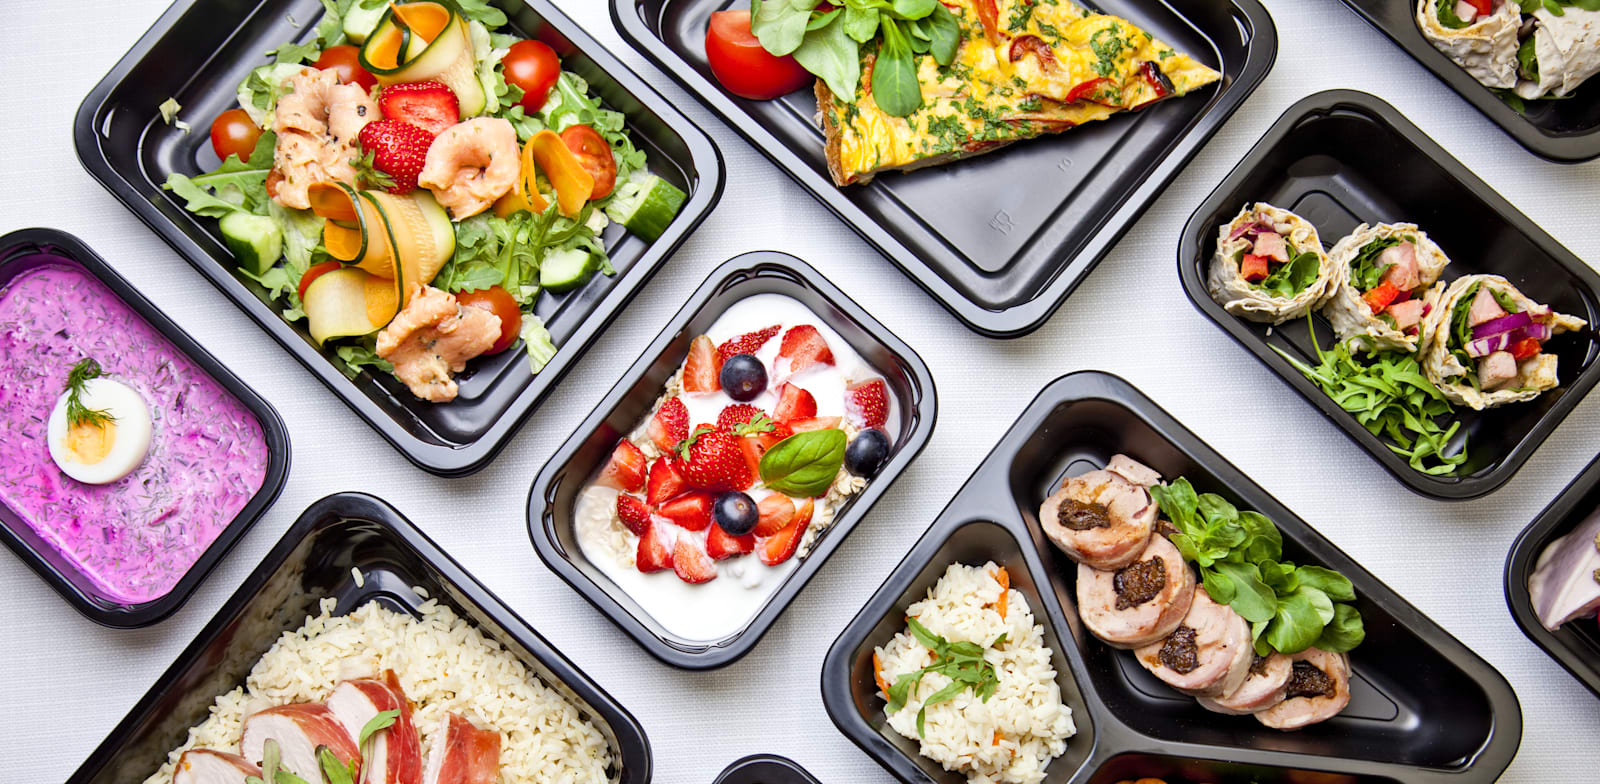 ארוחה בקופסאות משלוח. כ־30% מהמועסקים זכאים לקבל תשלום עבור ארוחת הצהריים / צילום: Shutterstock